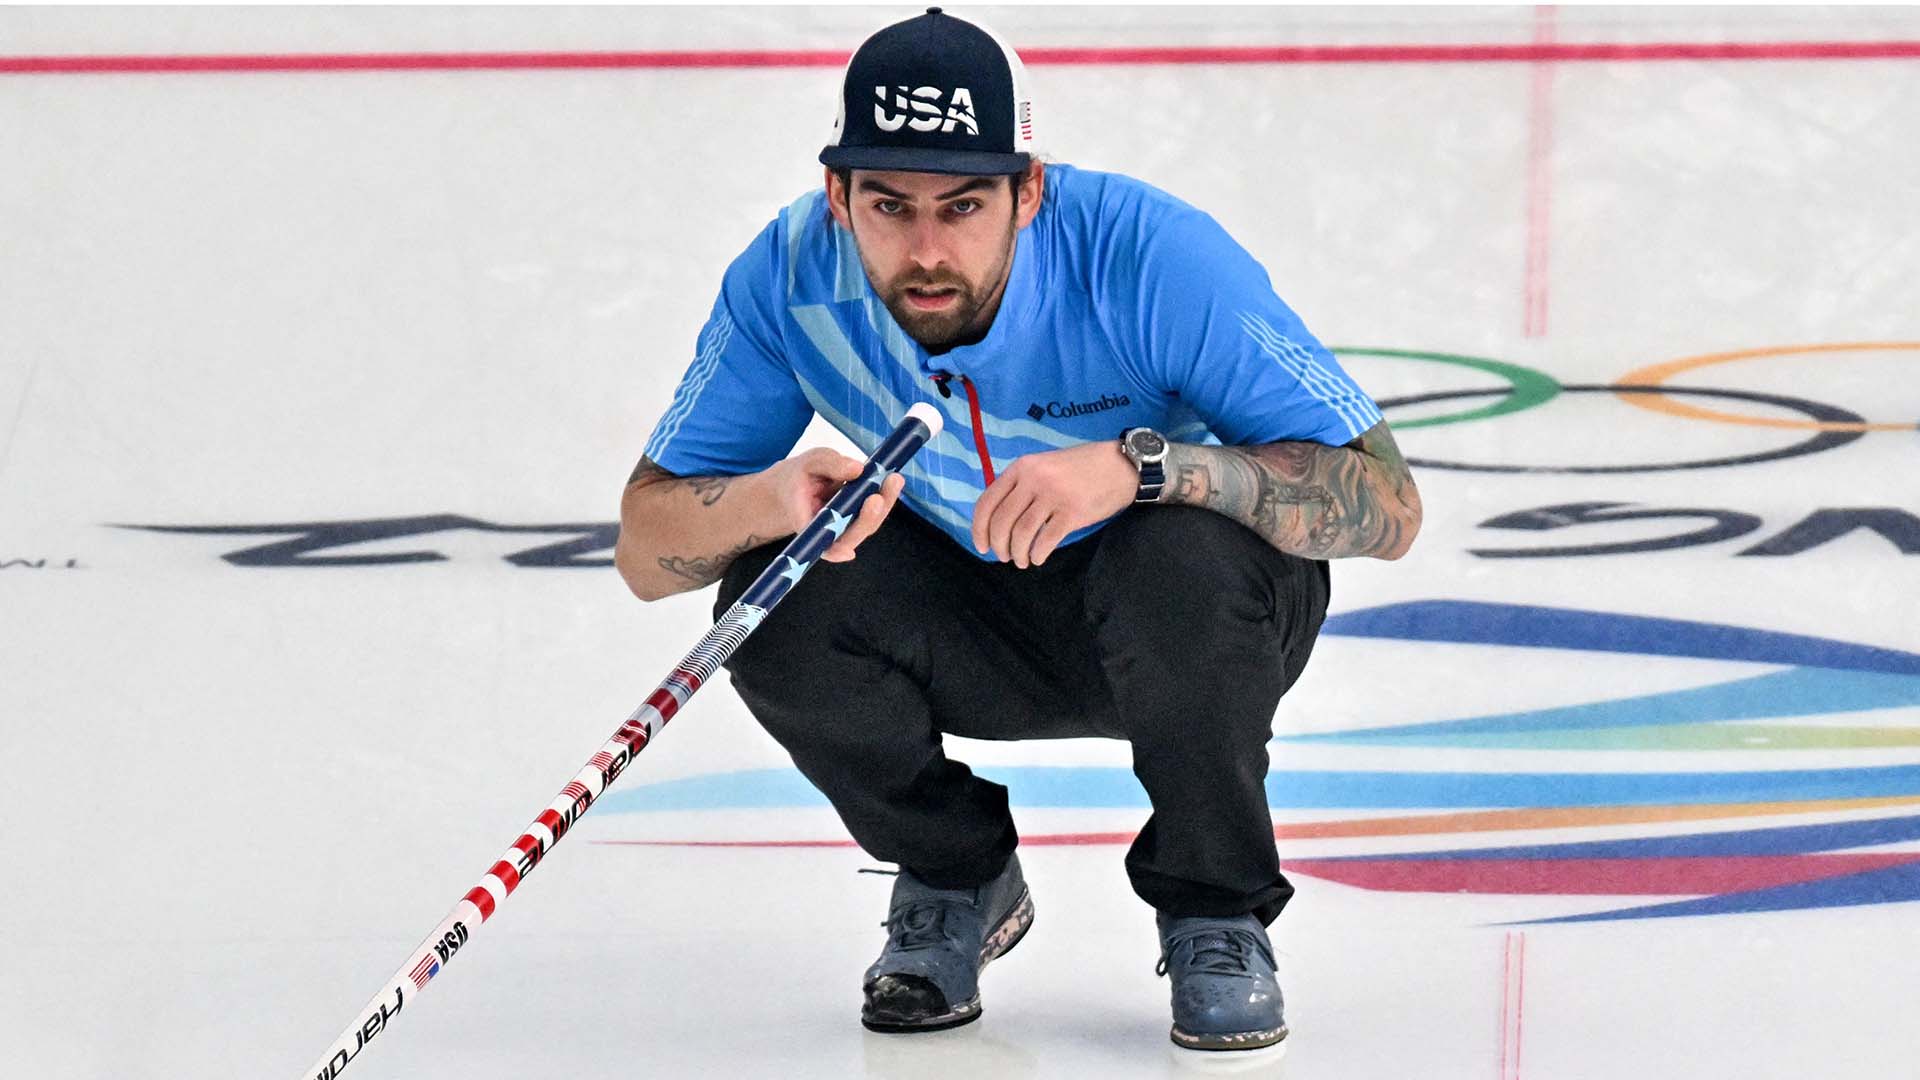 Norwegian curling team has gold-medal taste in pants[1